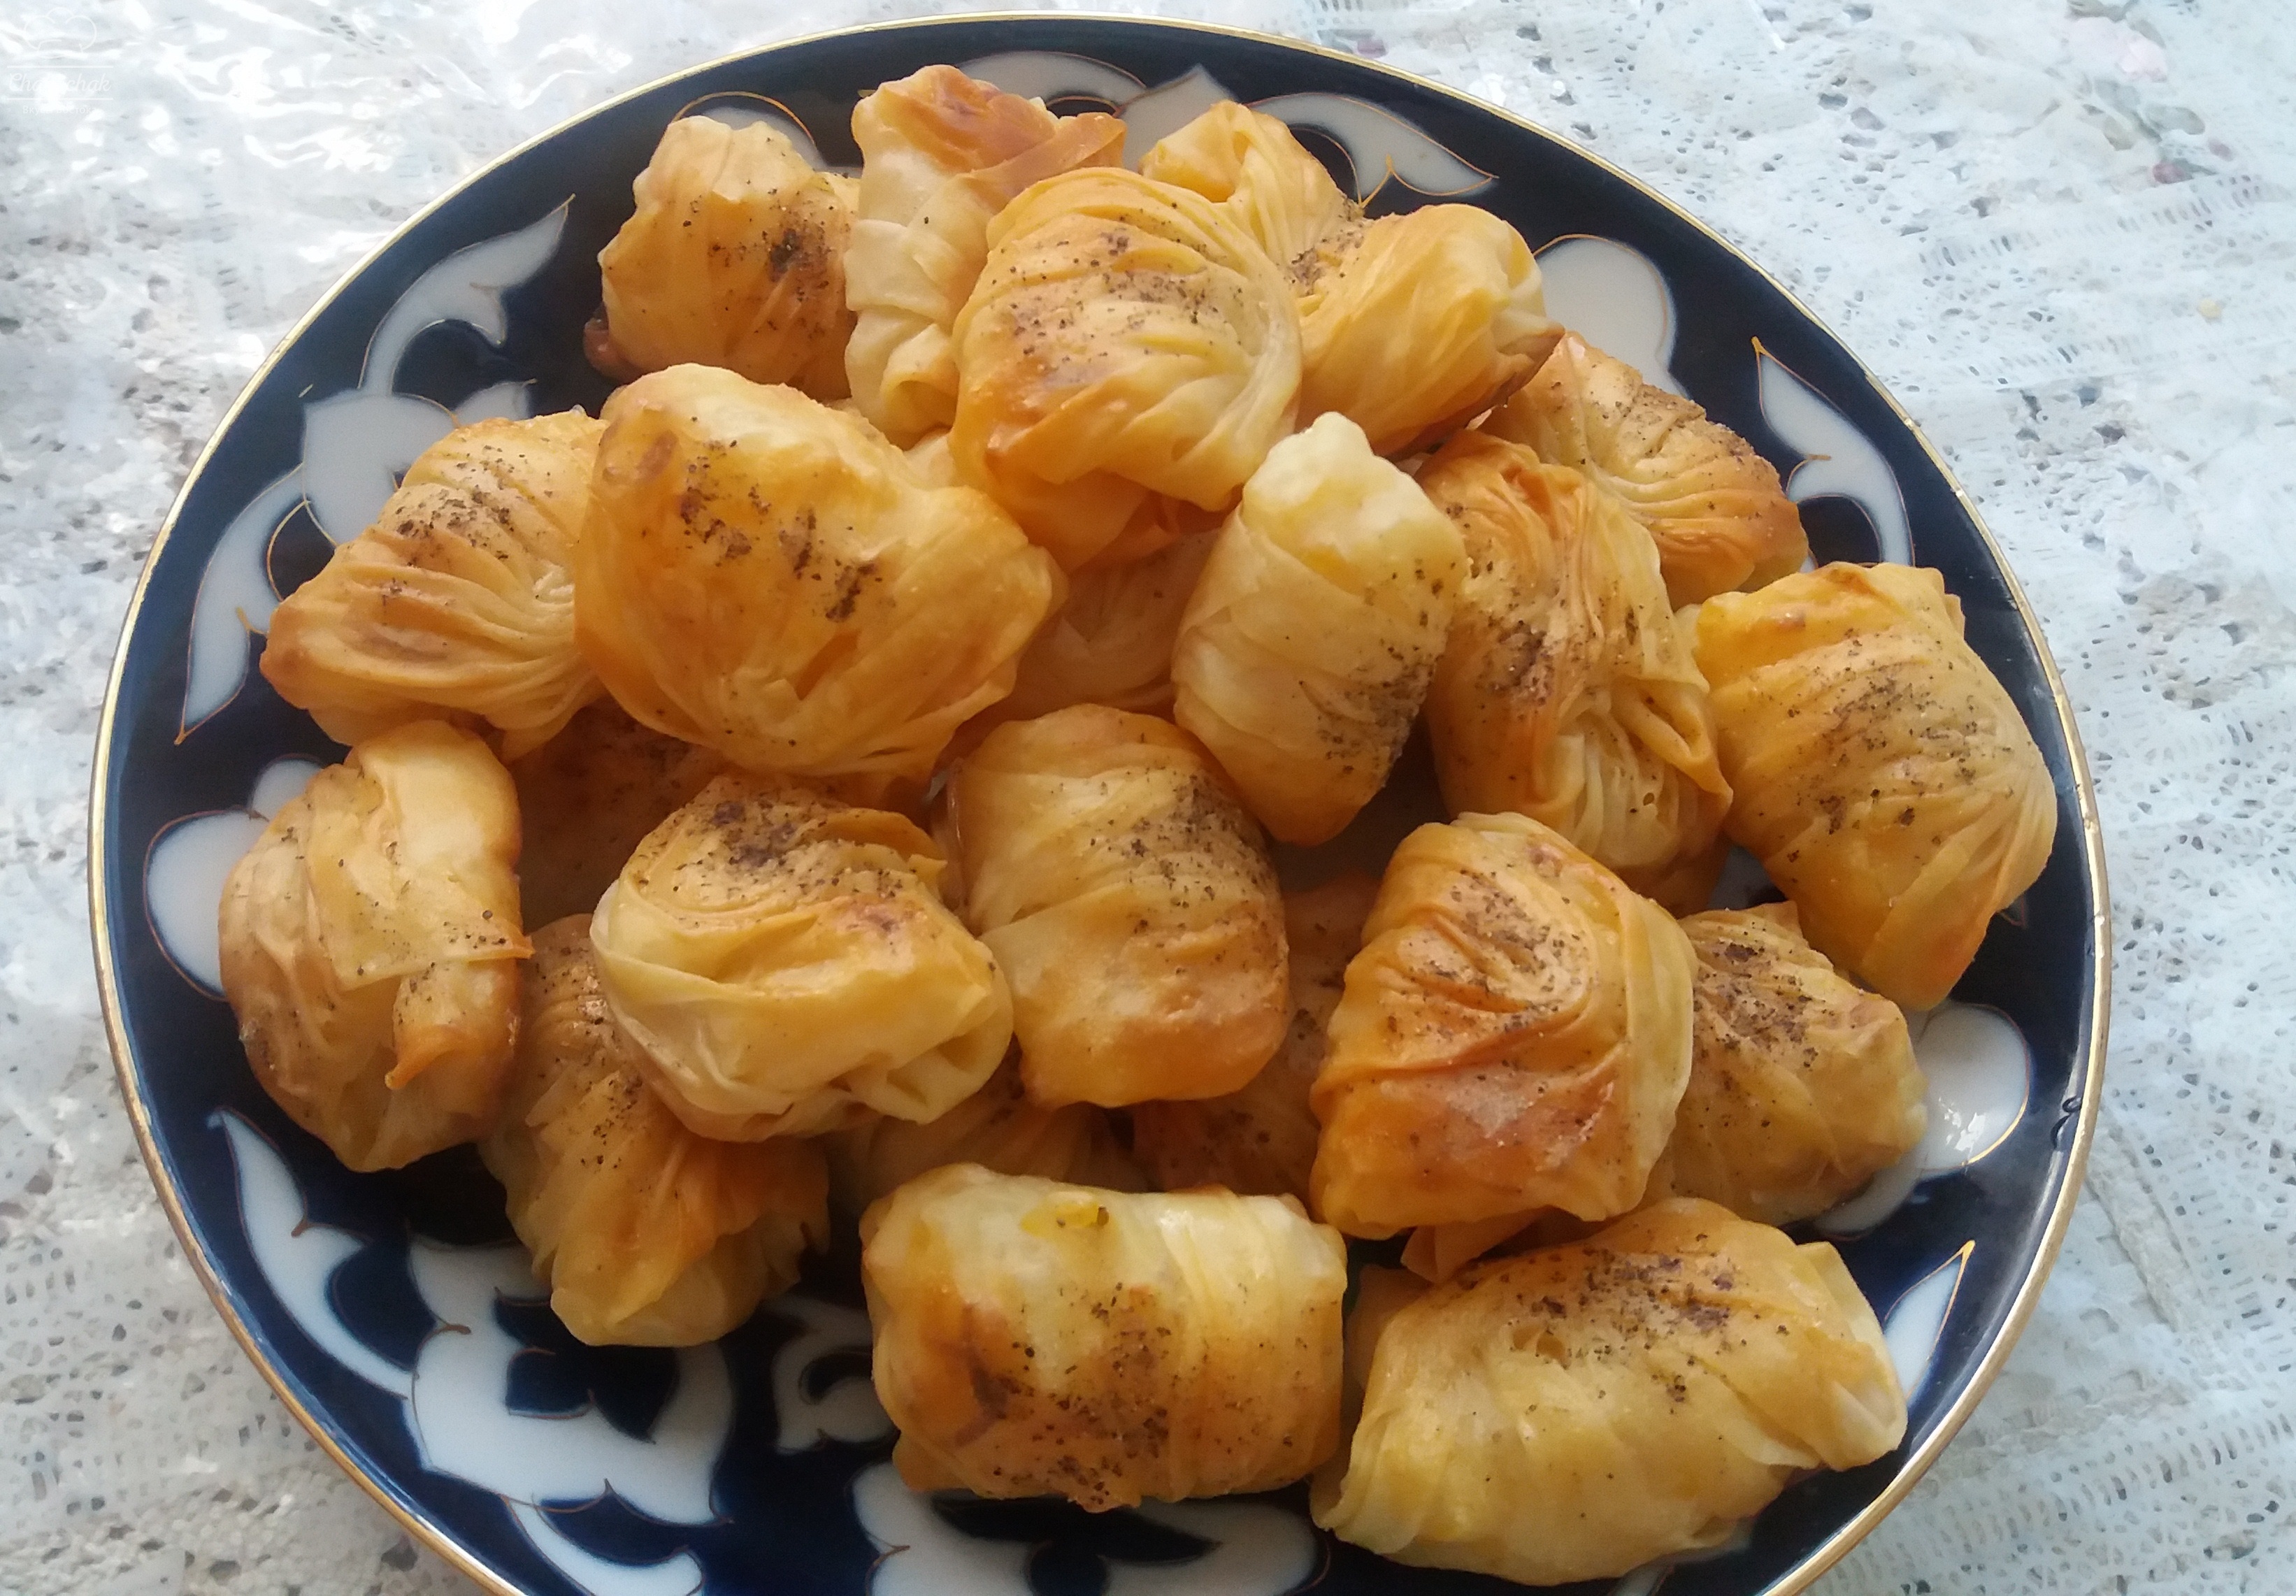 Пошаговый фоторецепт: турецкая самса с мясом и картофелем